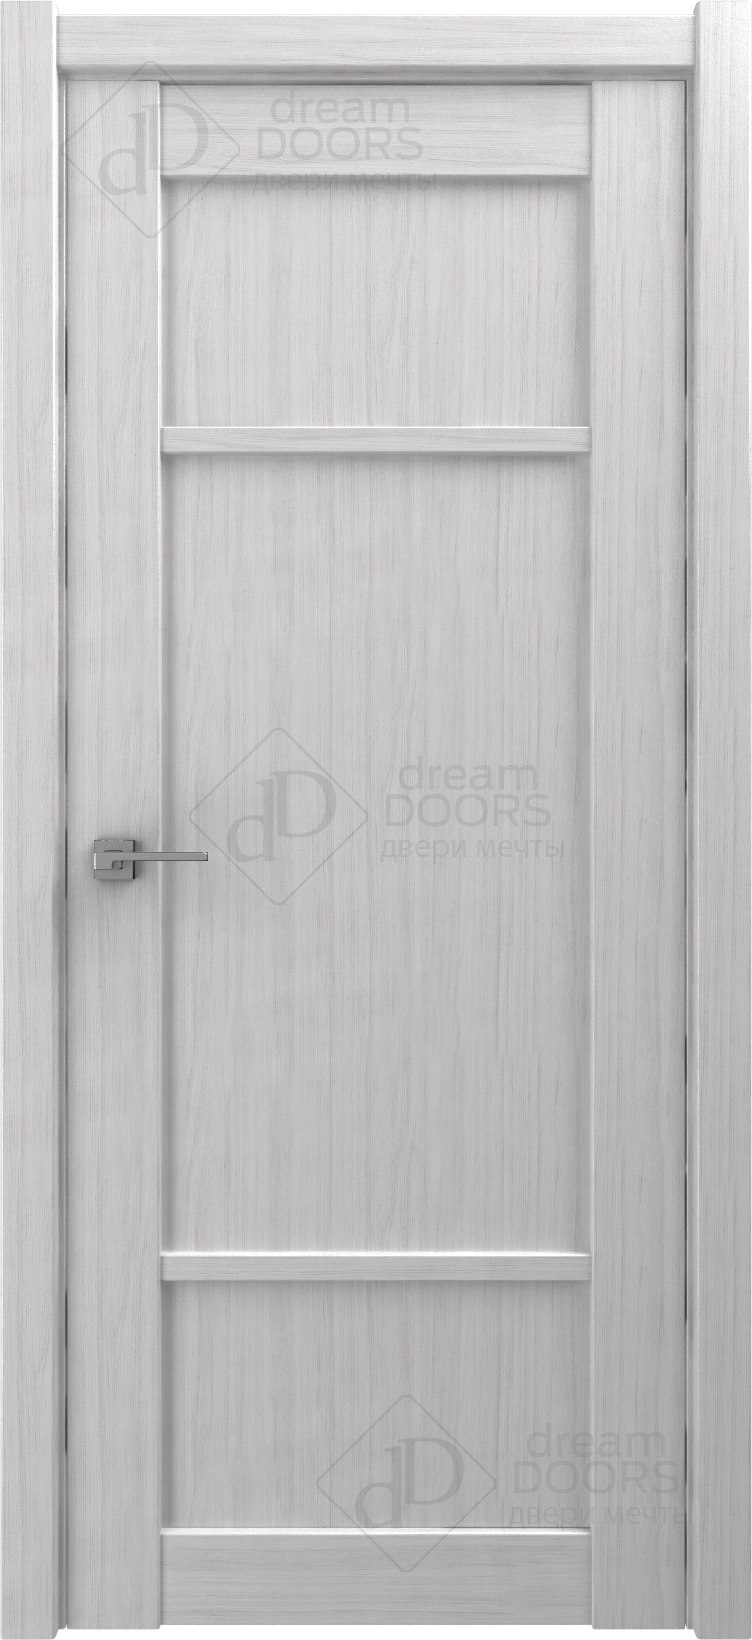 Dream Doors Межкомнатная дверь V25, арт. 18242 - фото №4